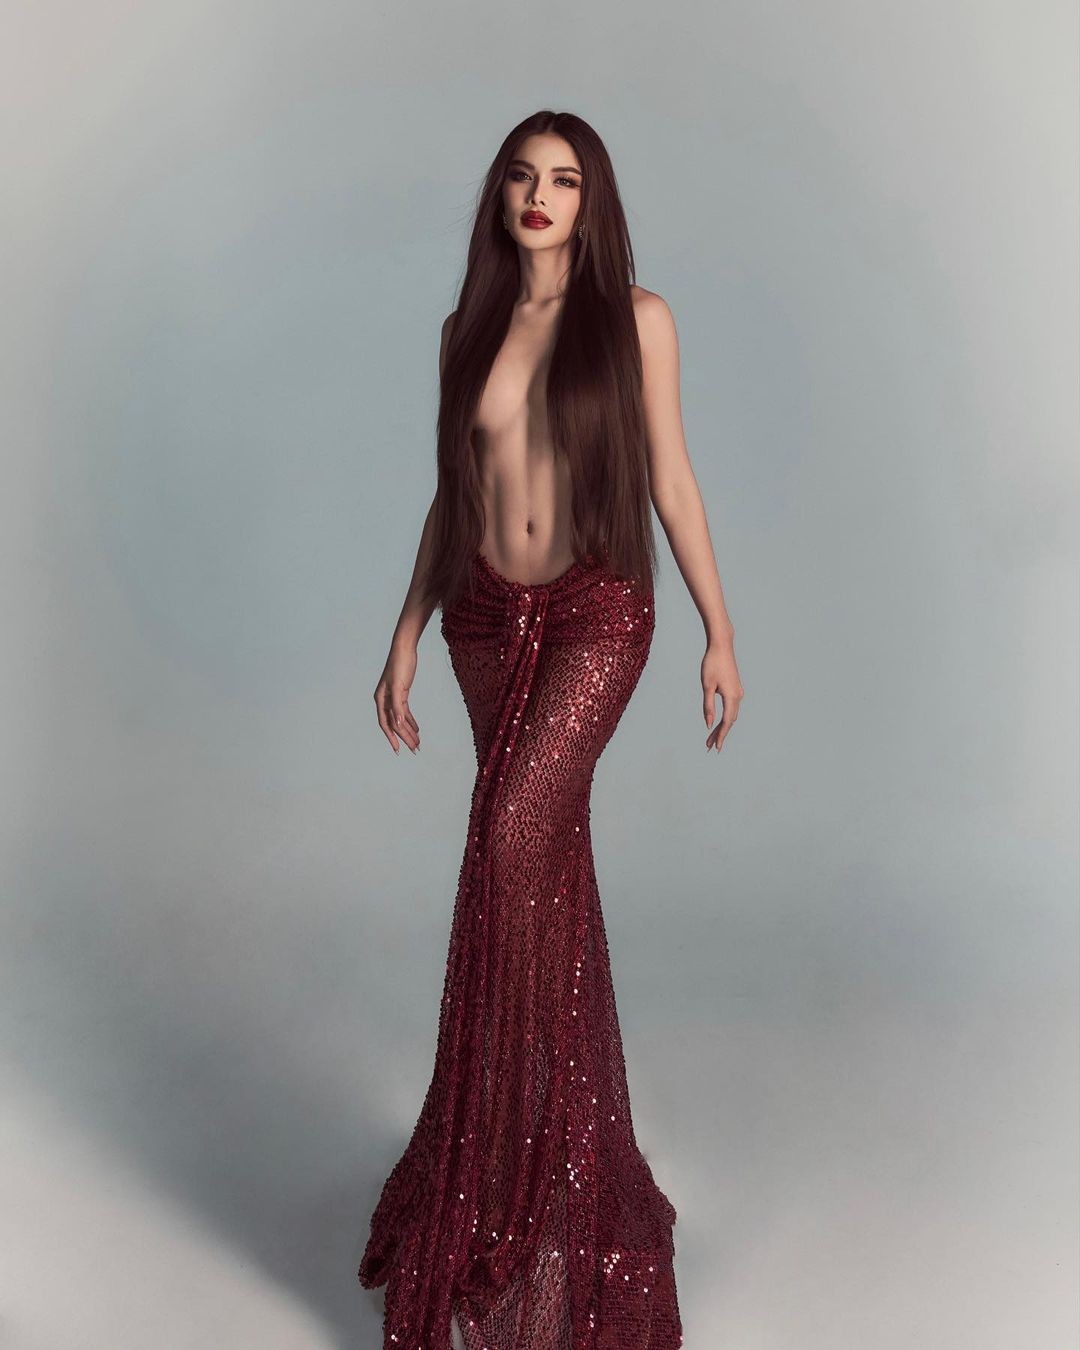 Hoa hậu Hòa bình Thái Lan gây tranh cãi vì chụp ảnh bán khỏa thân- Ảnh 3.